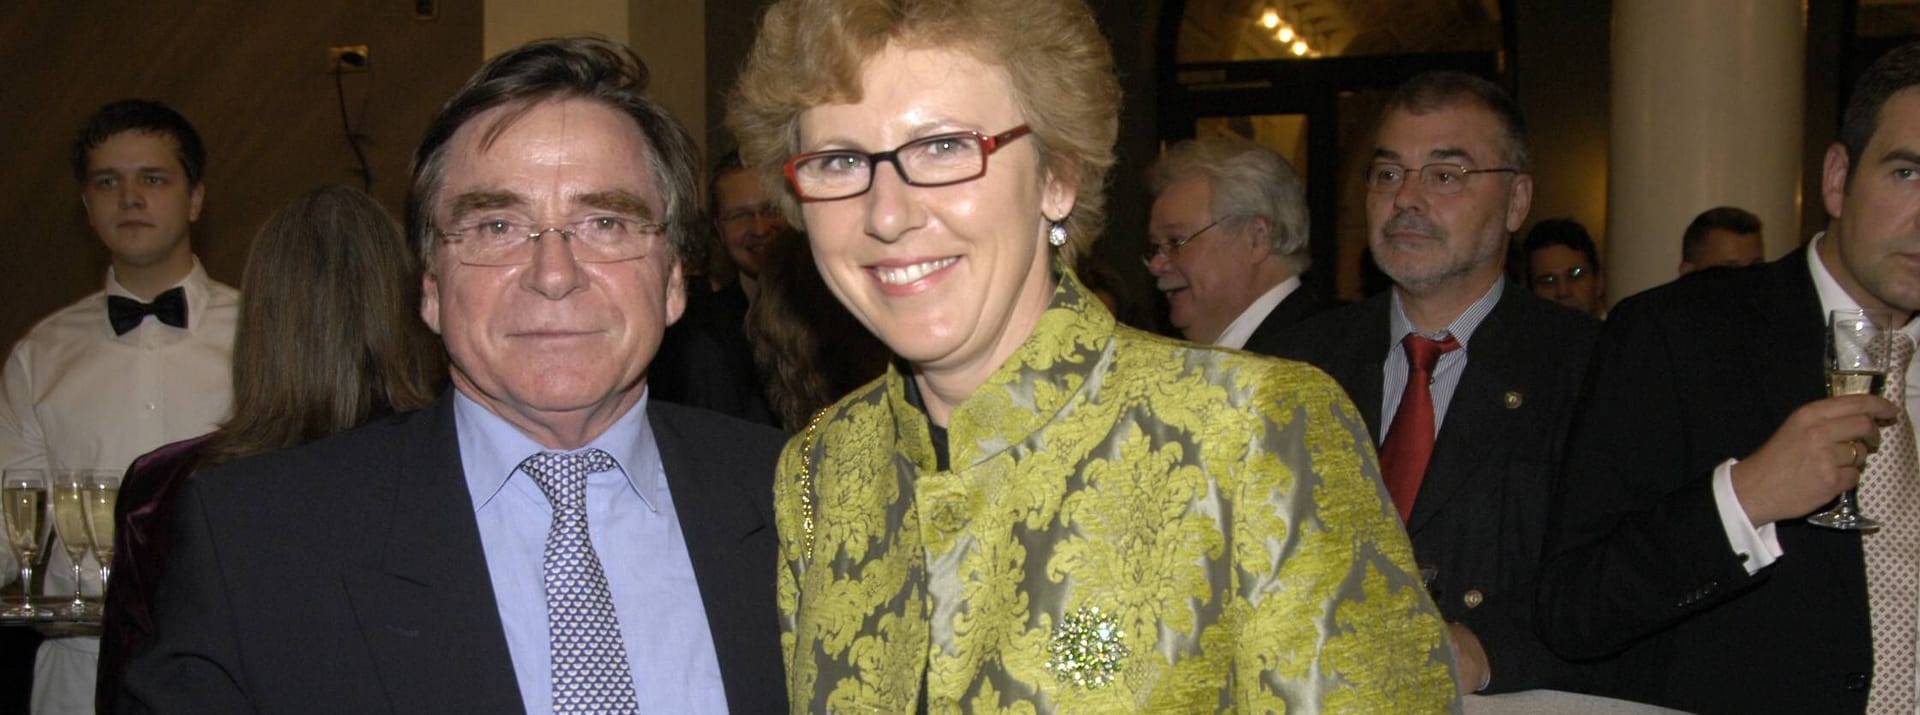 Elmar und Anita Wepper: Die beiden haben sich 2004 das Jawort gegeben.